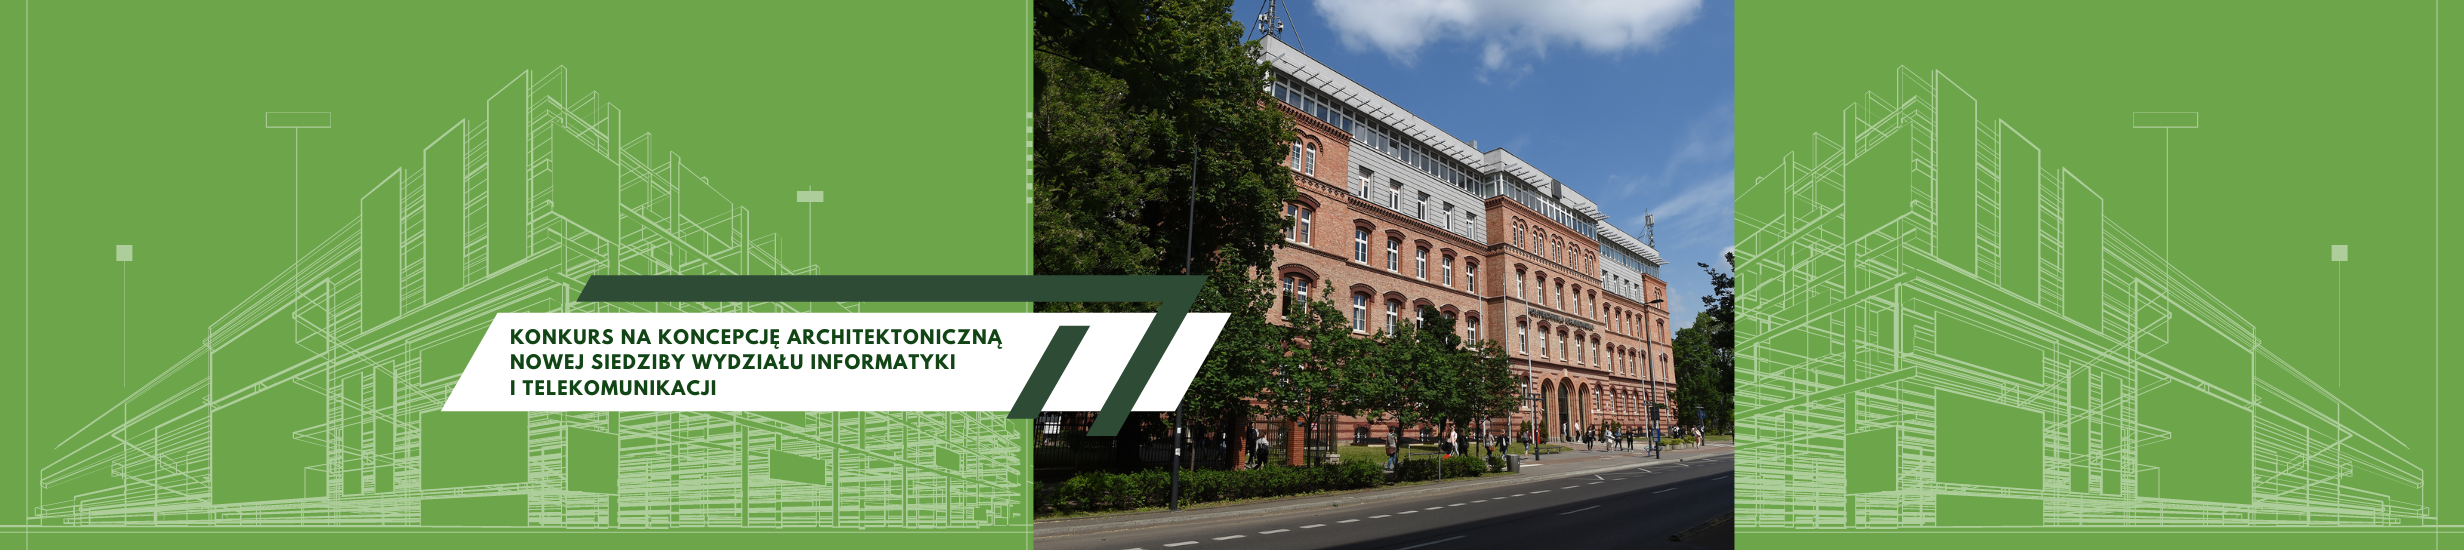 Nowa siedziba Wydziału Informatyki i Telekomunikacji - ogłoszono konkurs architektoniczny Politechniki Krakowskiej i SARP